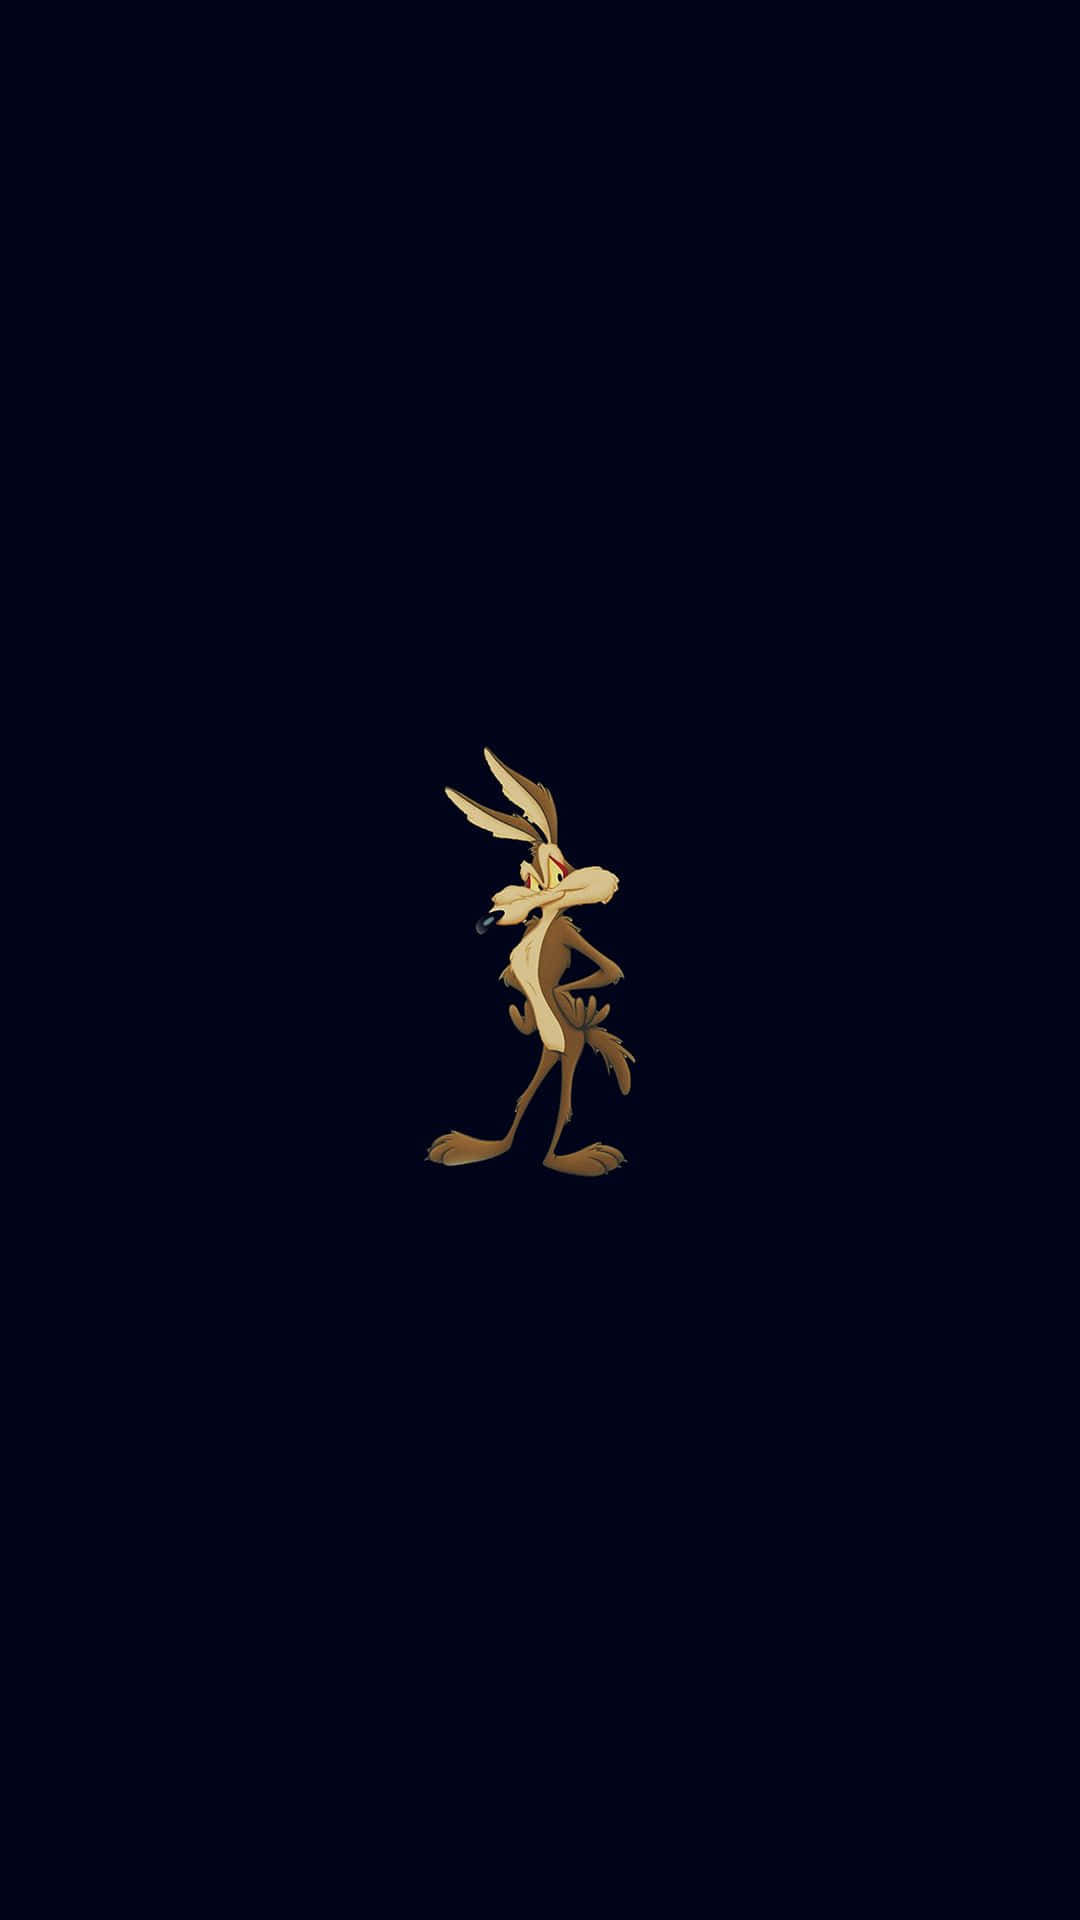 Eingoldener Hasen-logo Auf Dunklem Hintergrund Wallpaper